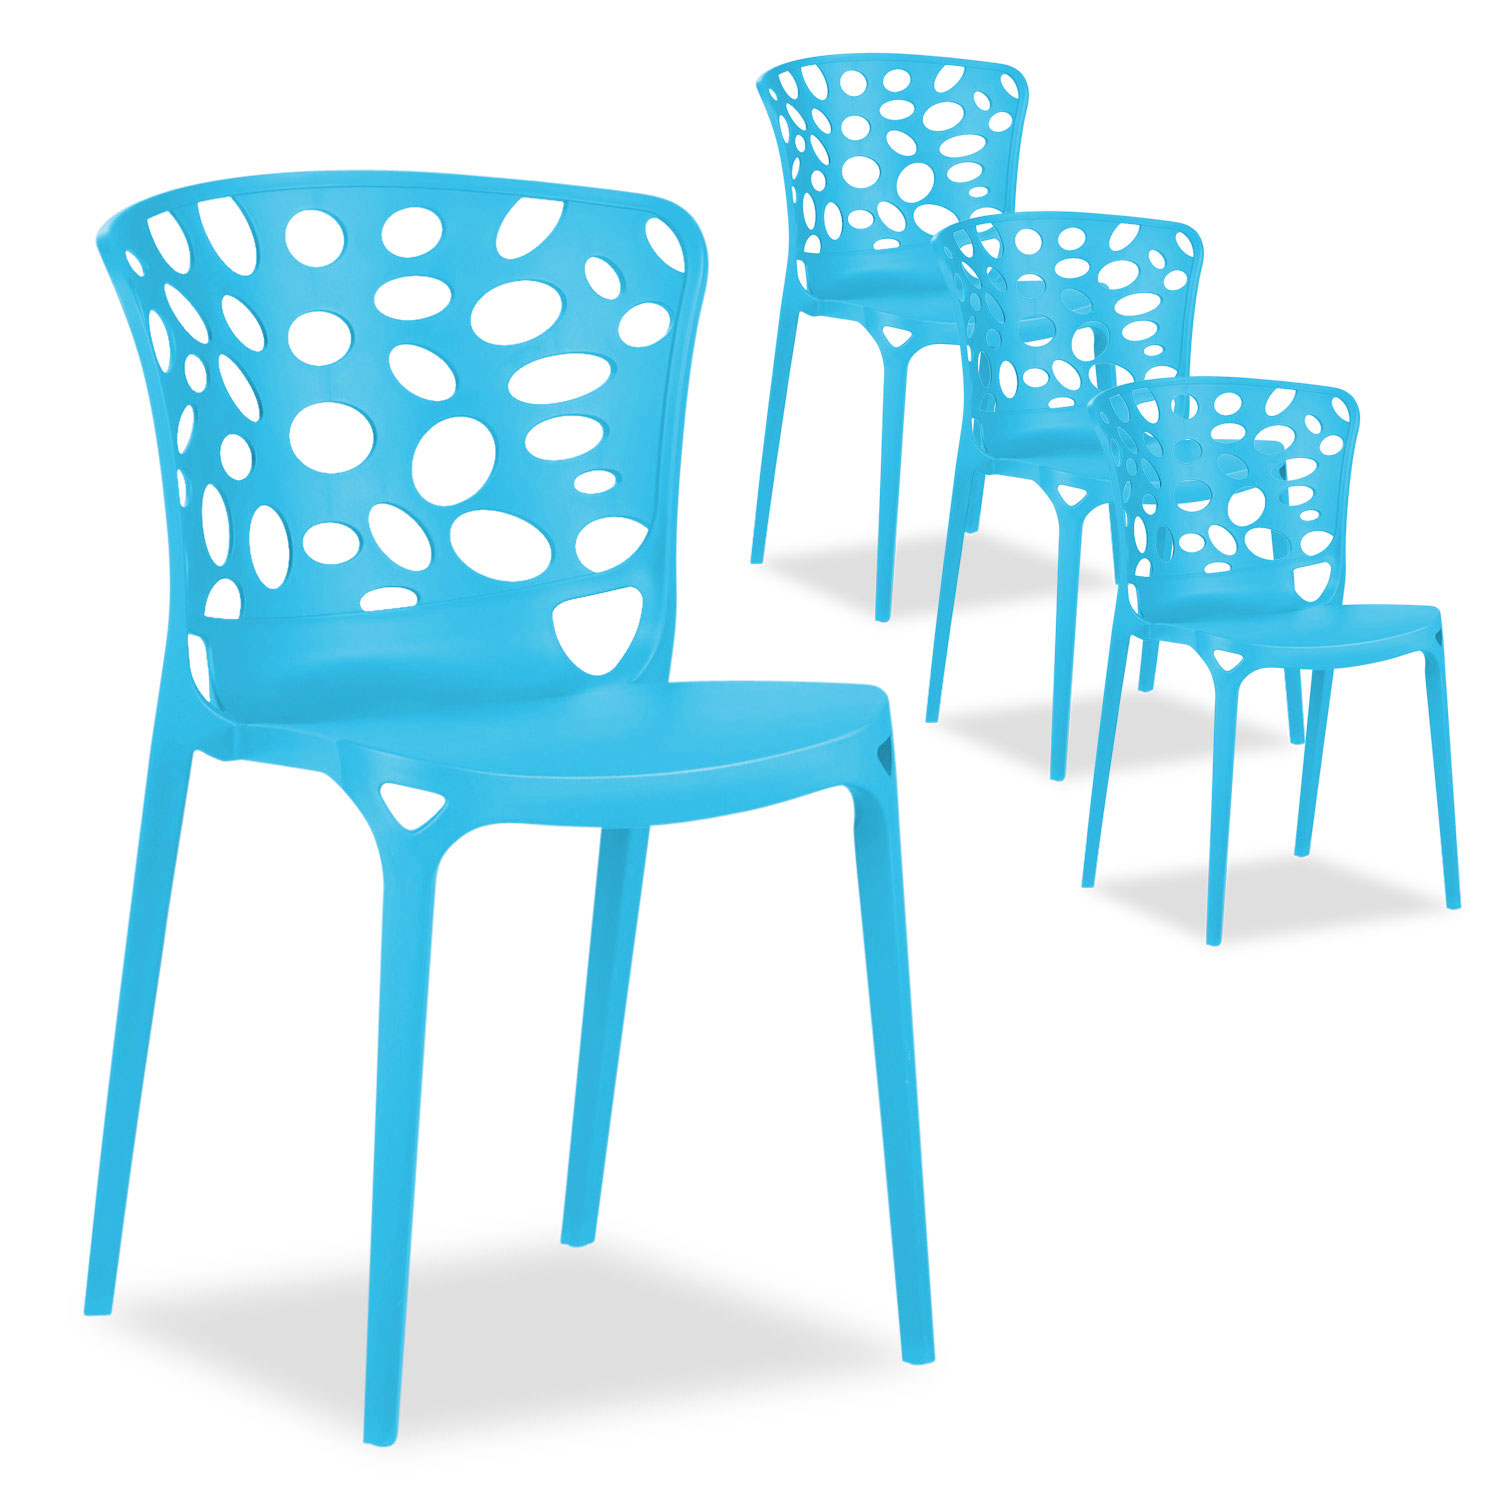 Lot de 2, 4 ou 6 Chaise de jardin Moderne 3 couleurs Chaises design Plastique Chaises exterieur Chaises empilable Chaise de cuisine